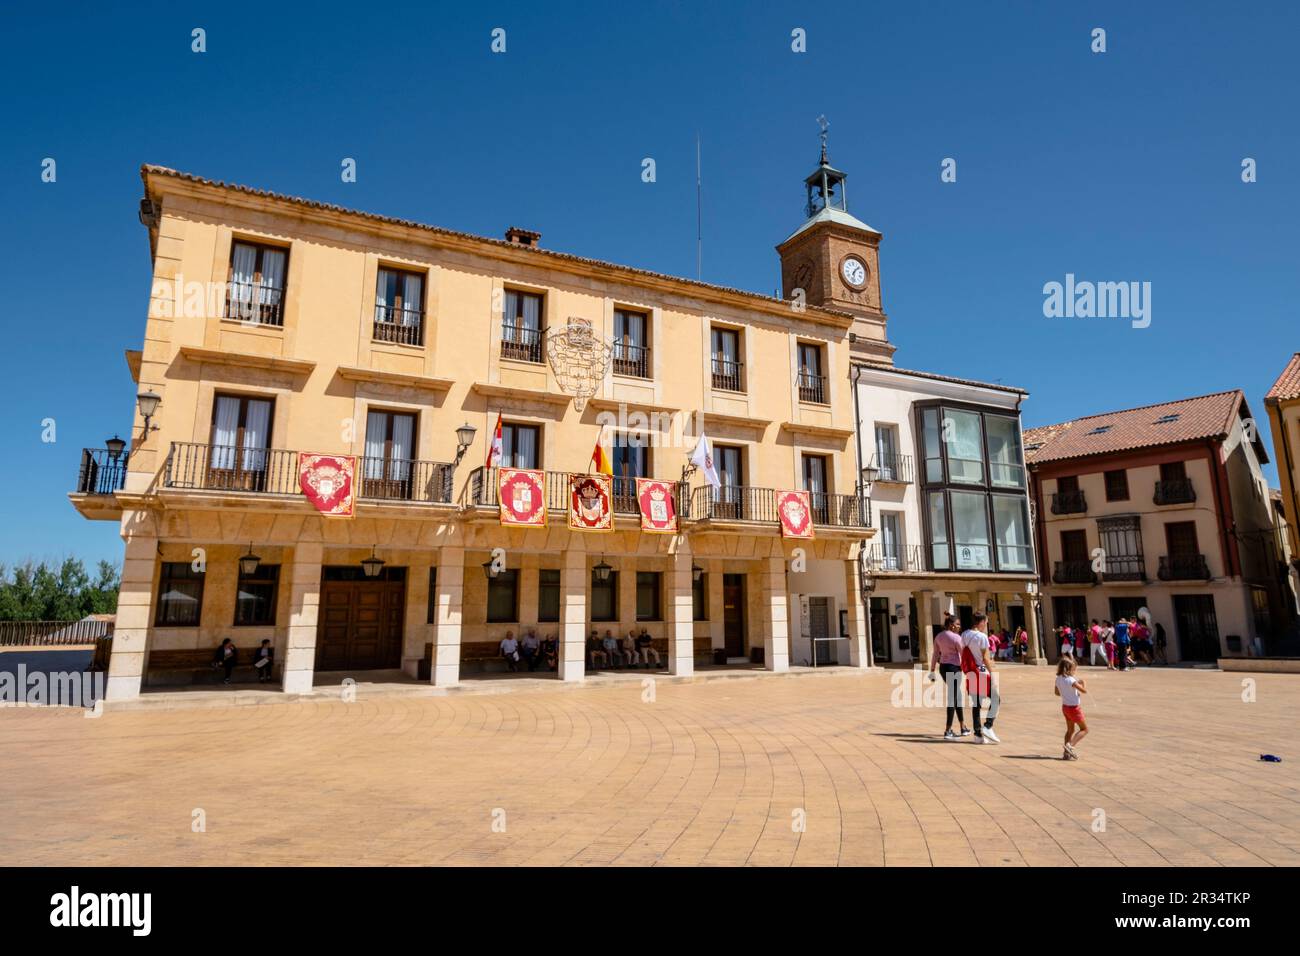 Ayuntamiento,Almazán, Soria, comunidad autónoma de Castilla y León, Spain, Europe. Stock Photo